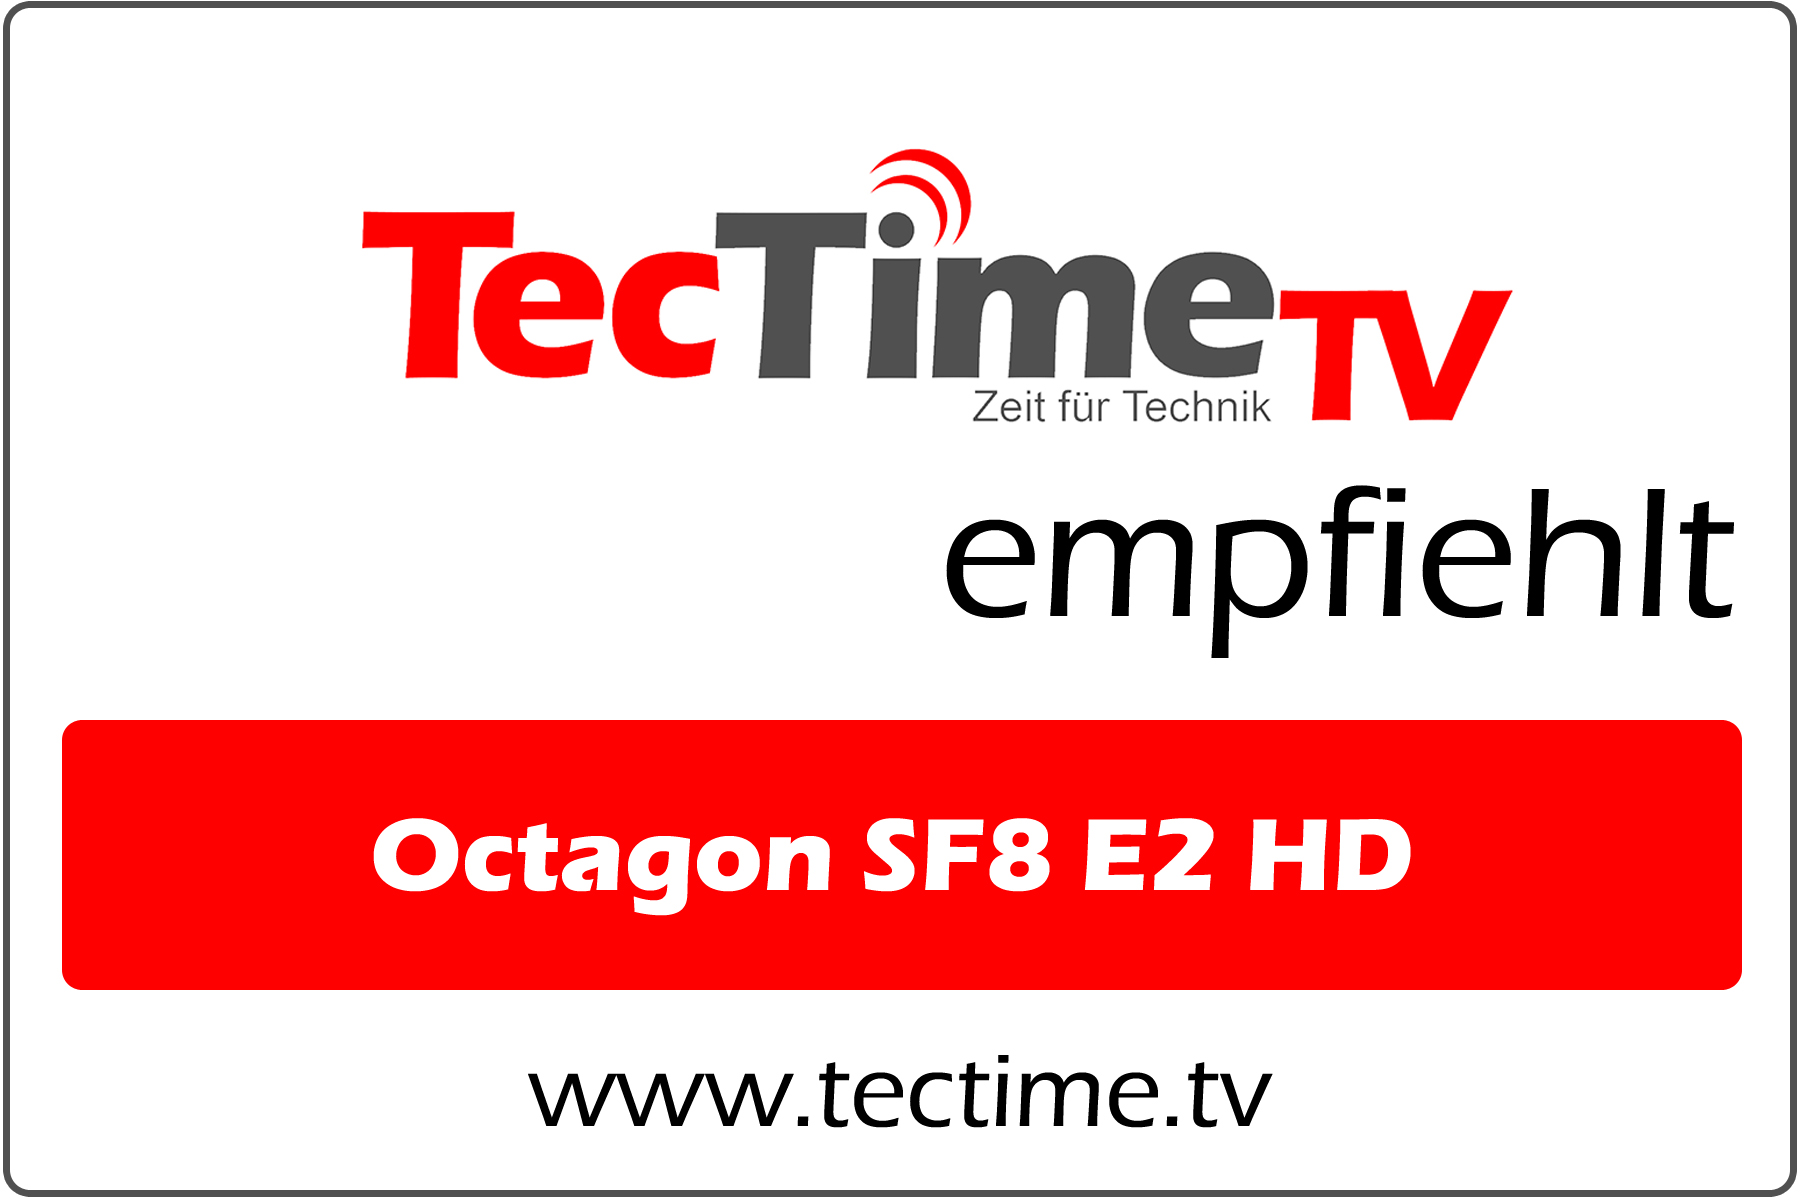 2_TecTime TV-EmpfehlungSF8 E2 HD